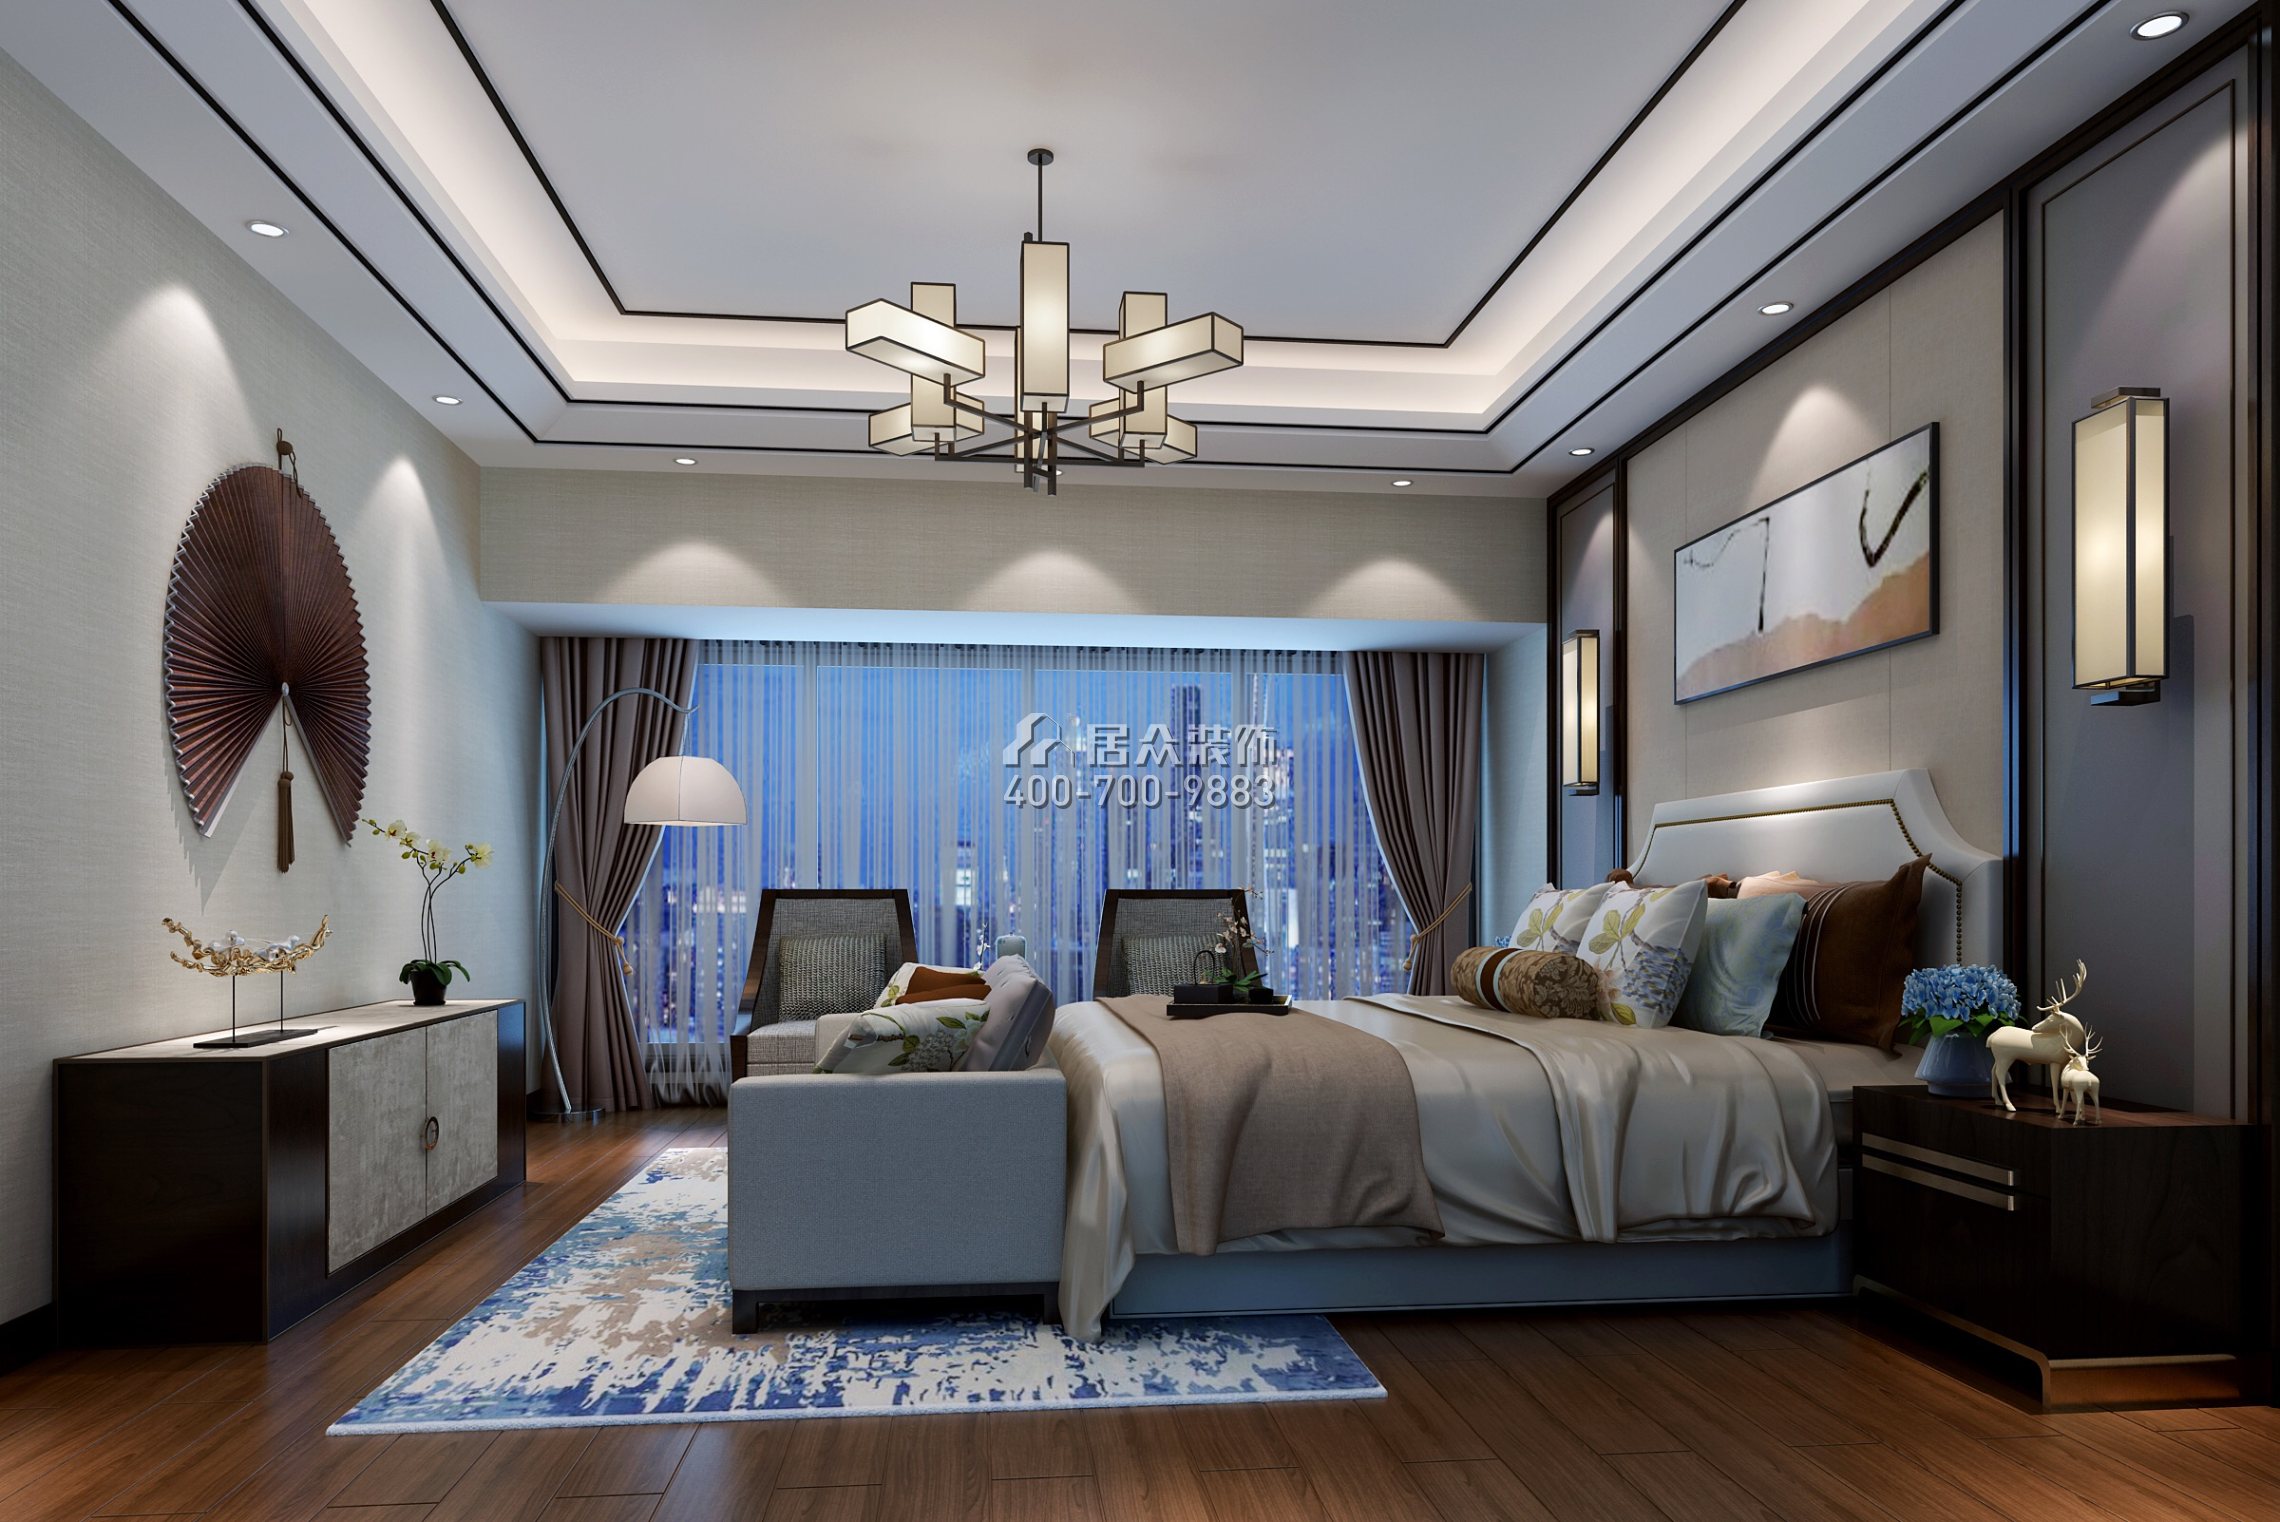 中洲中央公园二期150平方米新古典风格平层户型卧室装修效果图